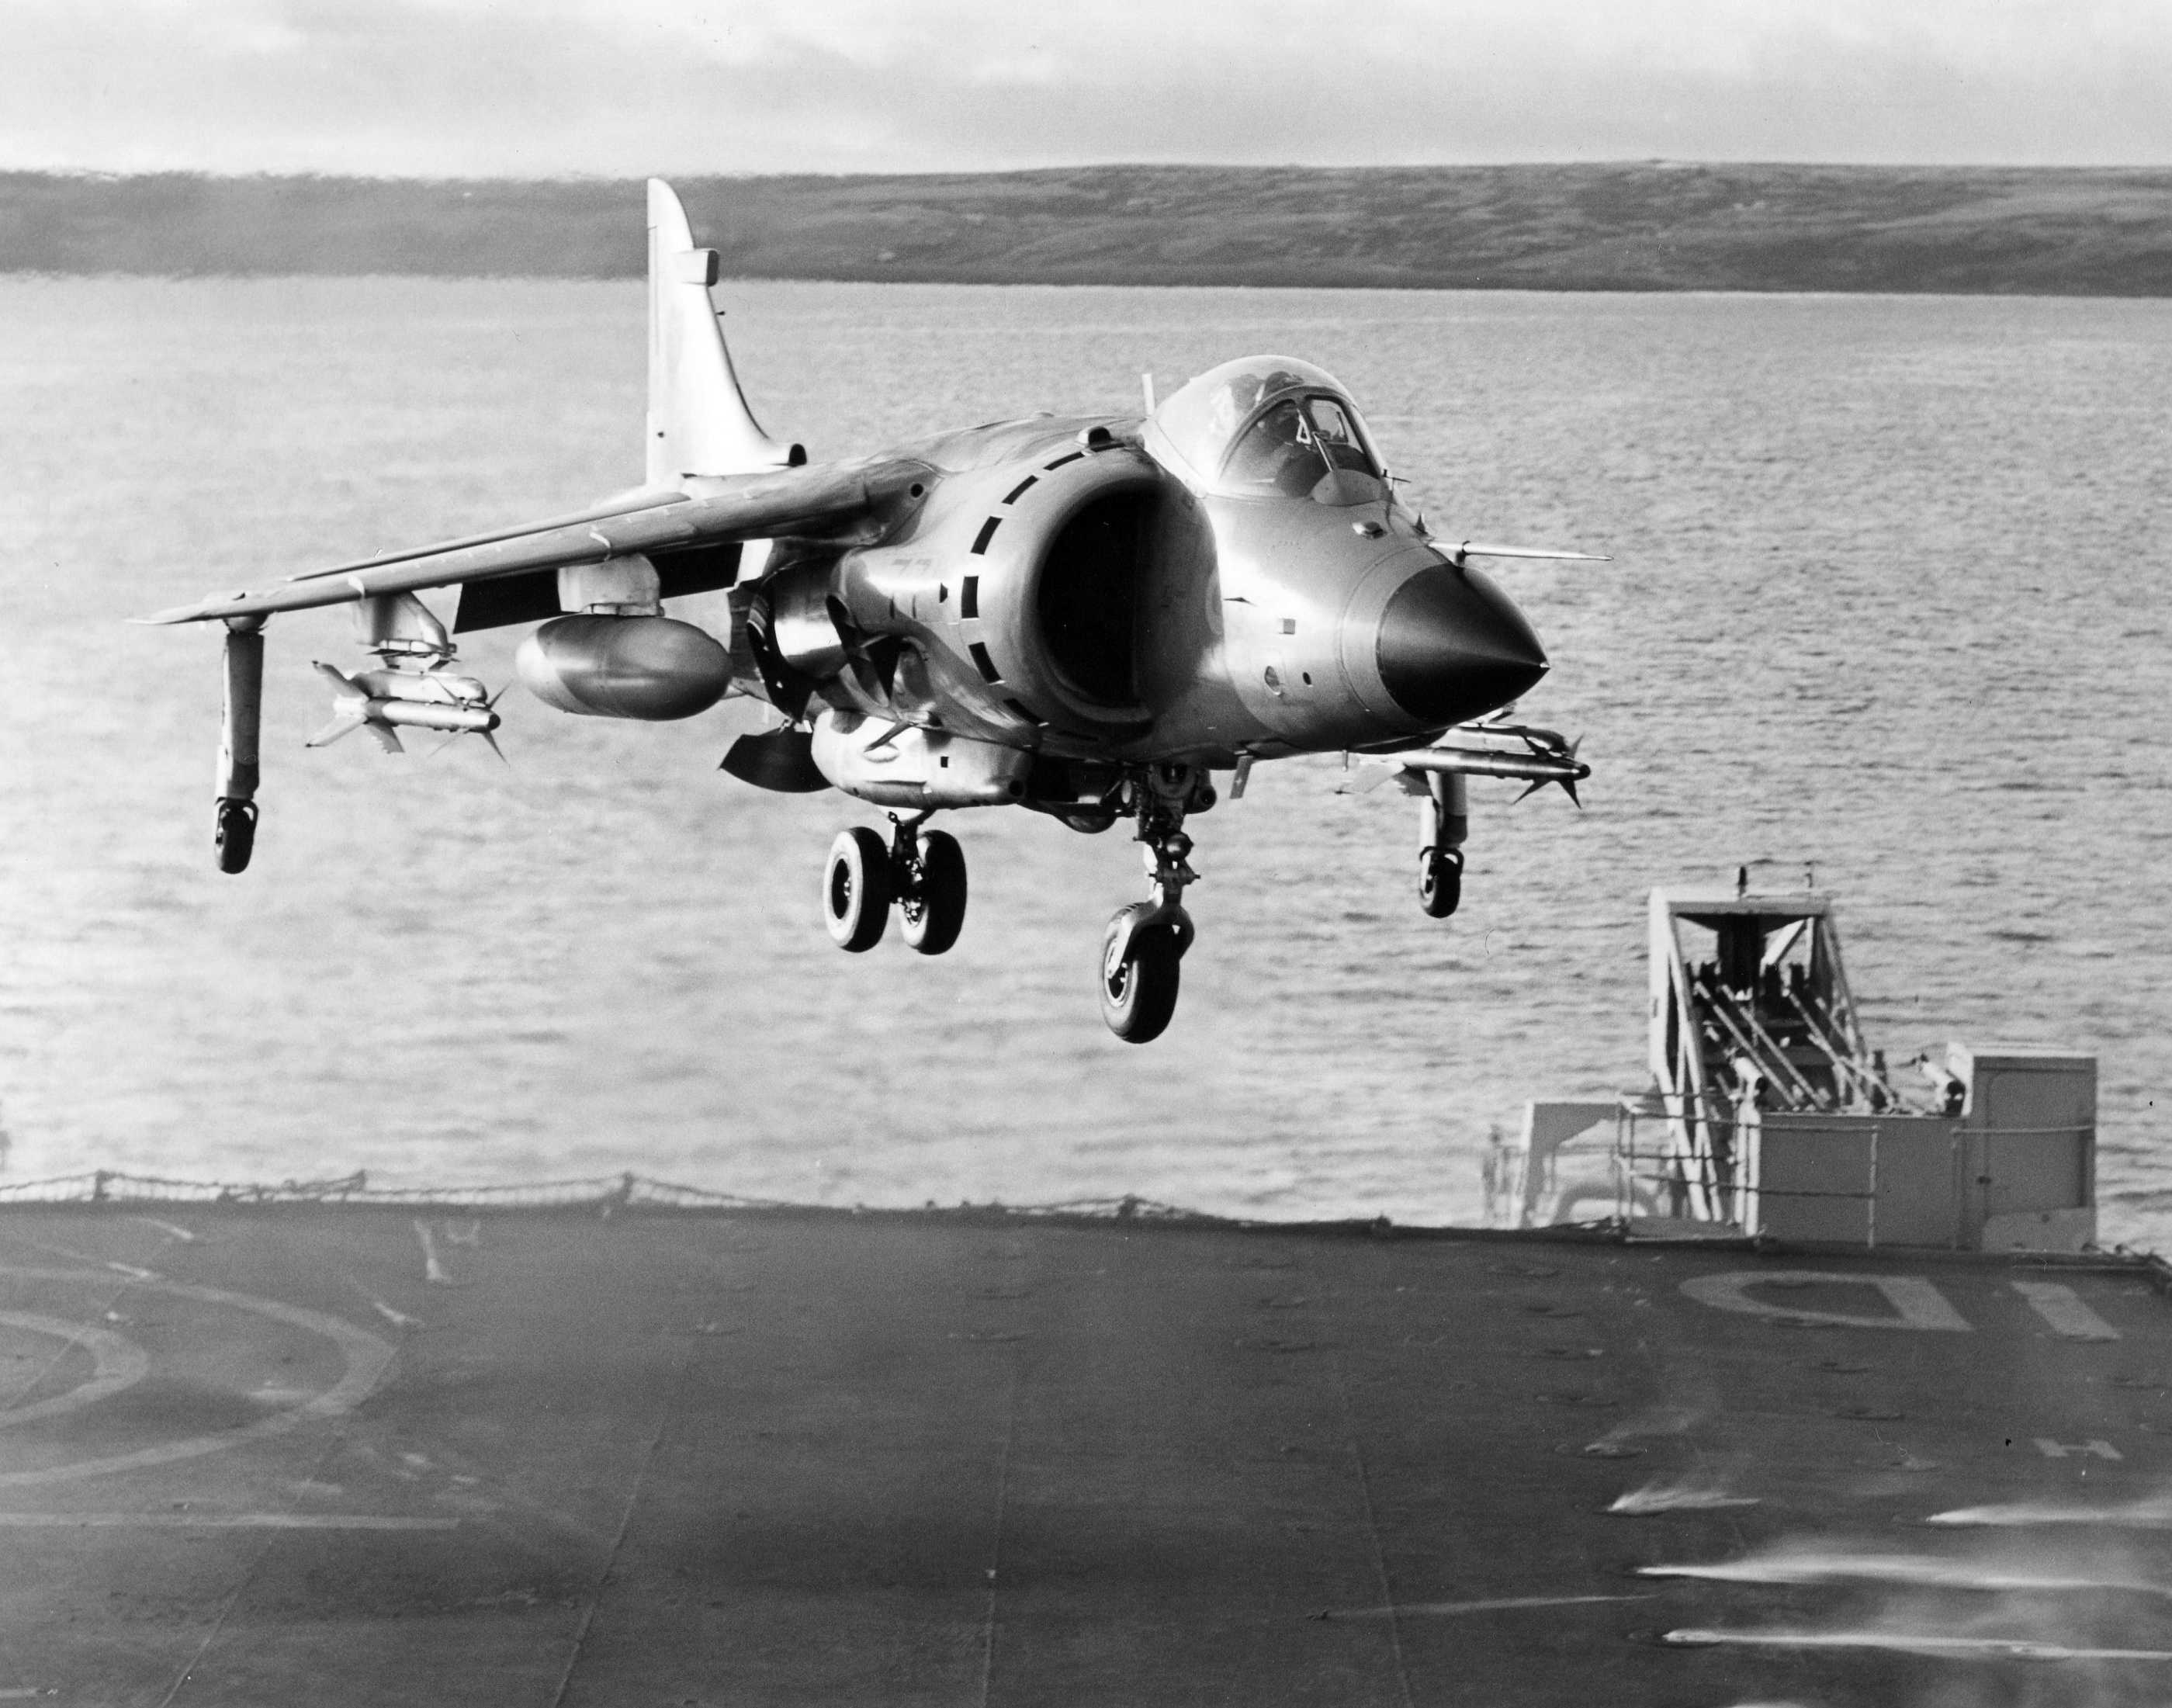 British AV8B Harrier Jet Aircraft on the deck of the HMS Hermes